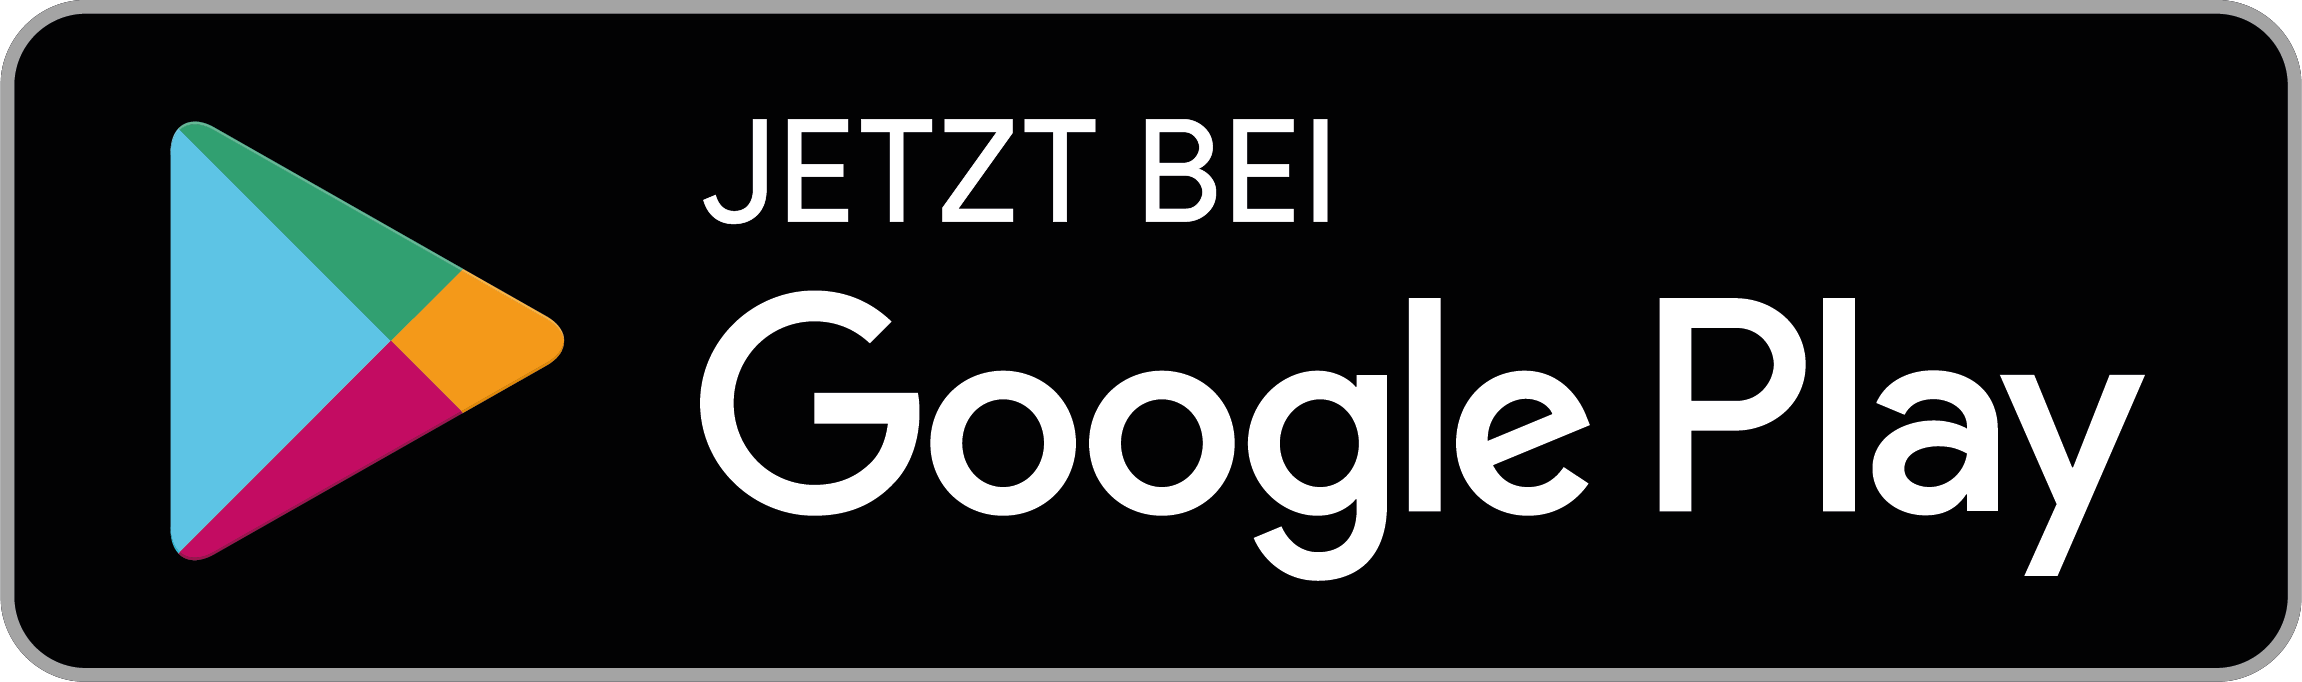 Bild mit Logo des Google Play Store